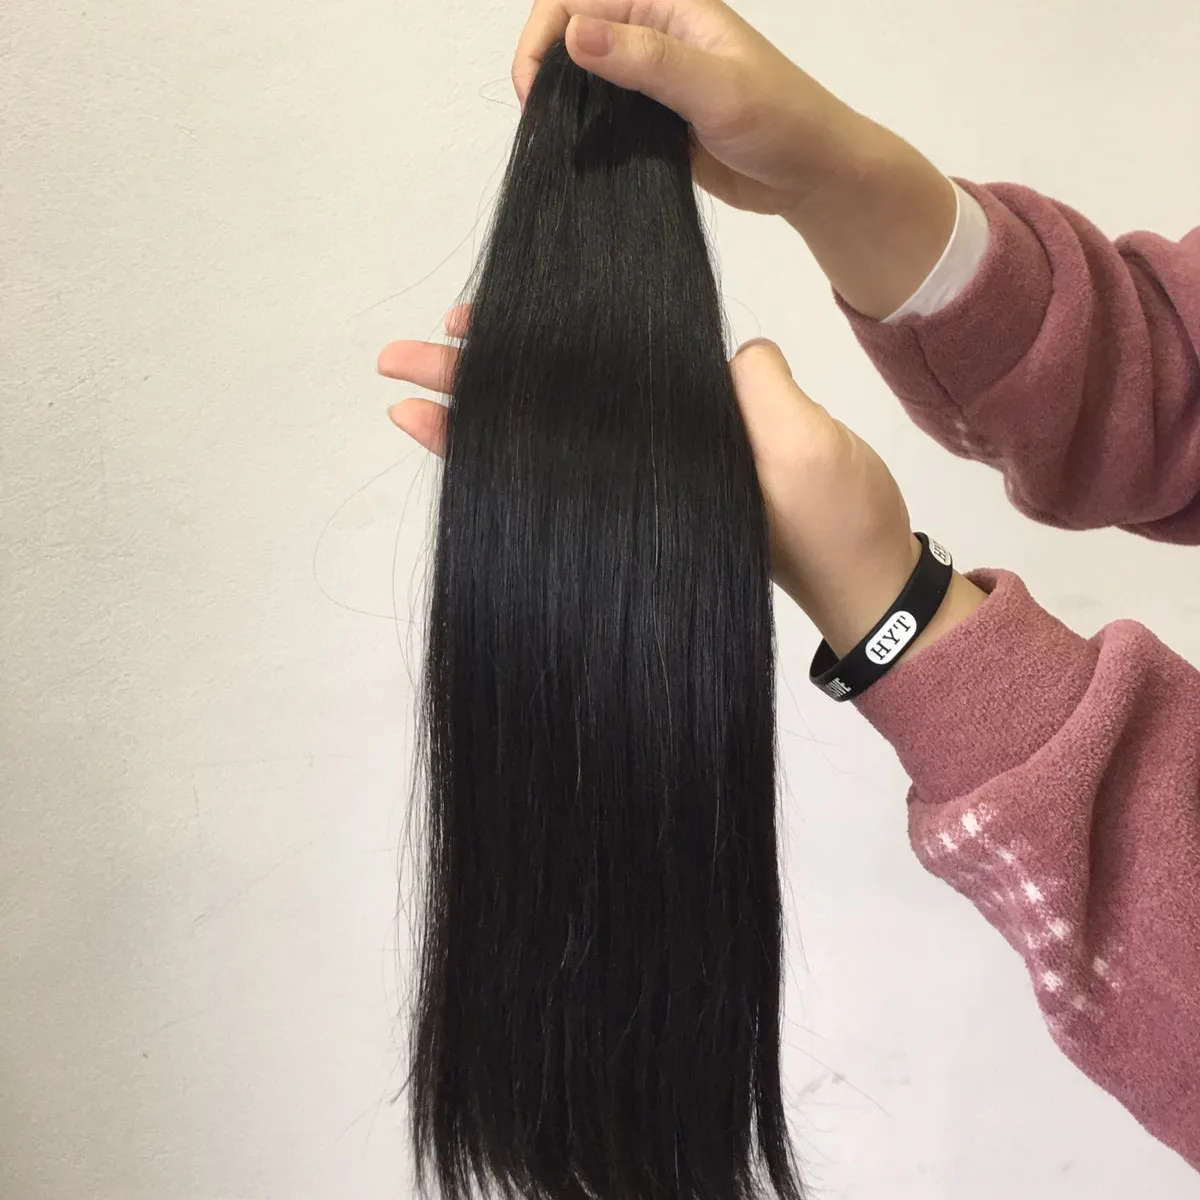 Шелковистые волосы, двойные волосы, оптовая цена для заказа образцов или оптового заказа, вьетнамские волосы-сырье, один донор